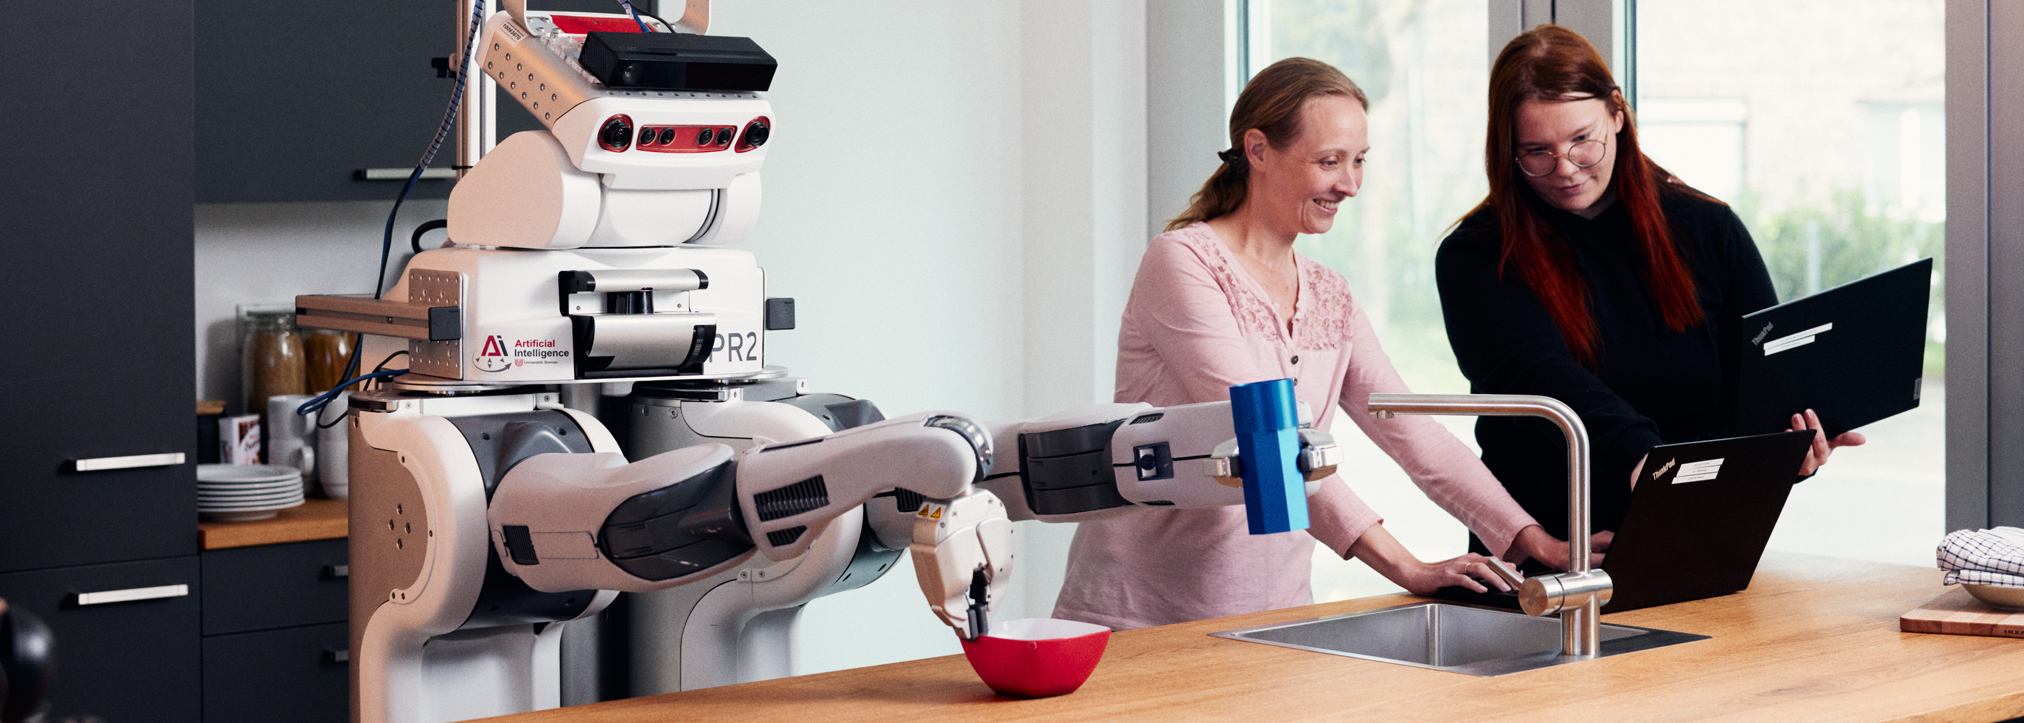 Ein Roboter steht gemeinsam mit zwei Frauen hinter einem Küchentresen. Die Frauen bedienen einen Laptop, der Roboter rührt in einer Schüssel.